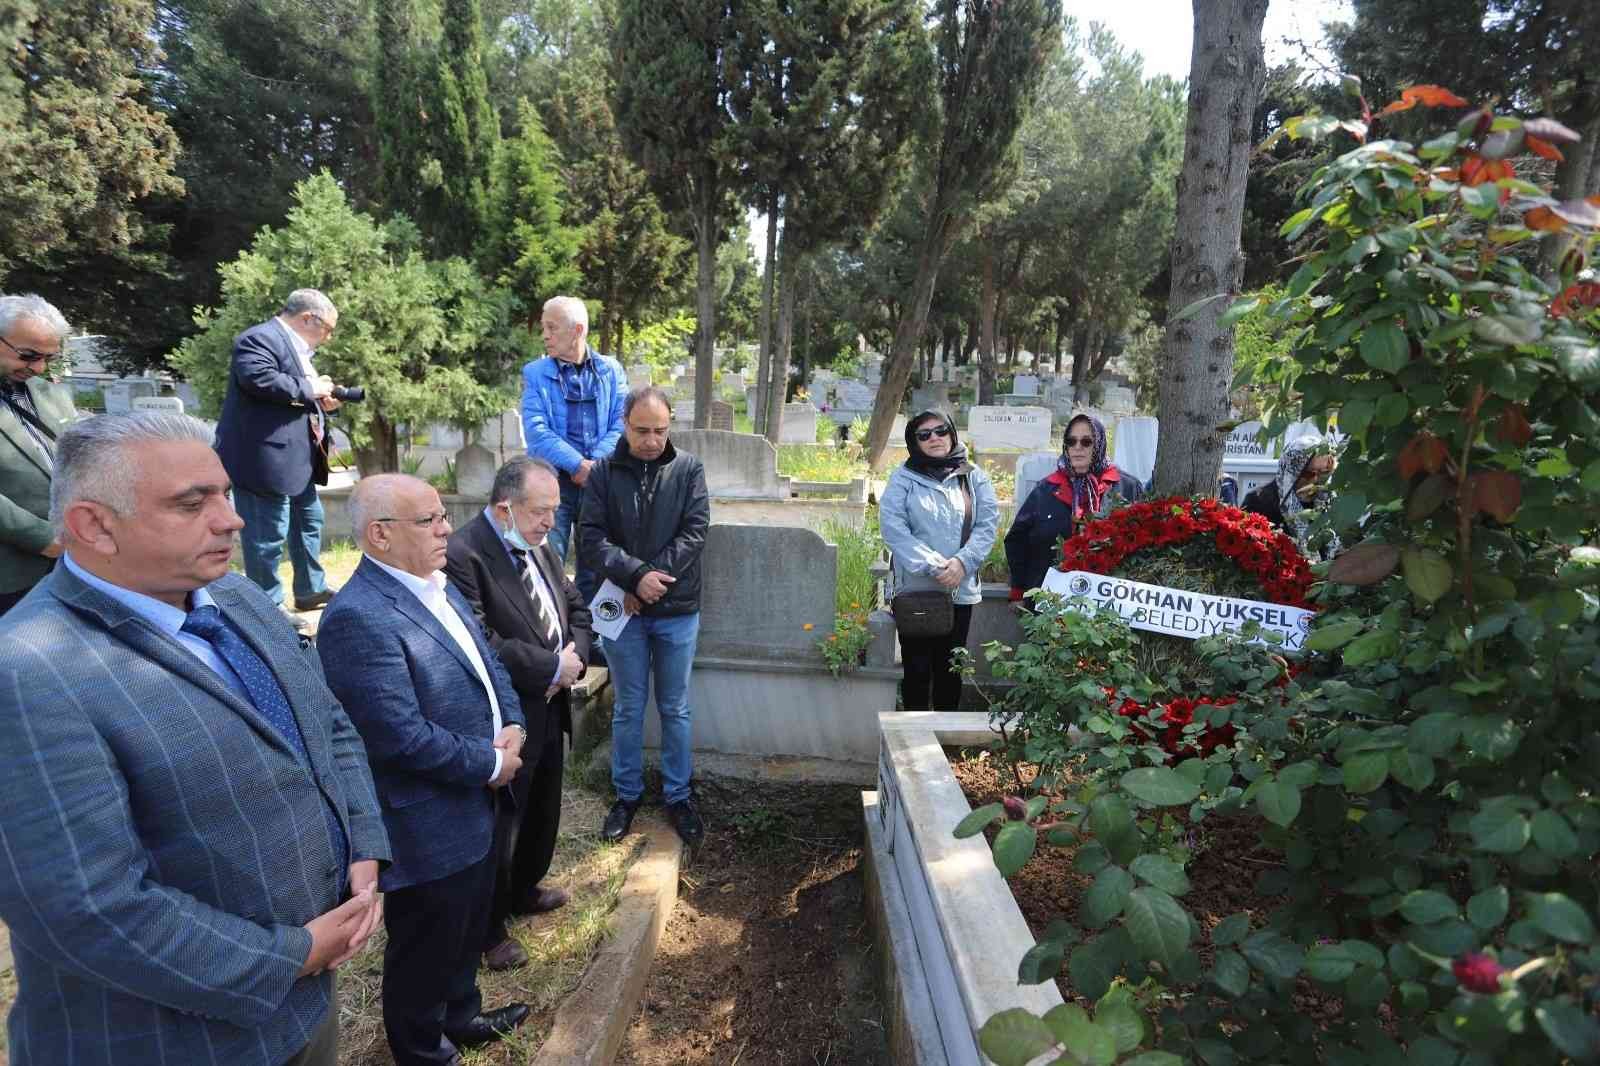 Kartal Belediyesi Basın Yayın ve Halkla İlişkiler eski müdürü Hüseyin Kabacıoğlu, vefatının 11. yıl dönümünde Maltepe Gülsuyu Mezarlığı’ndaki ...